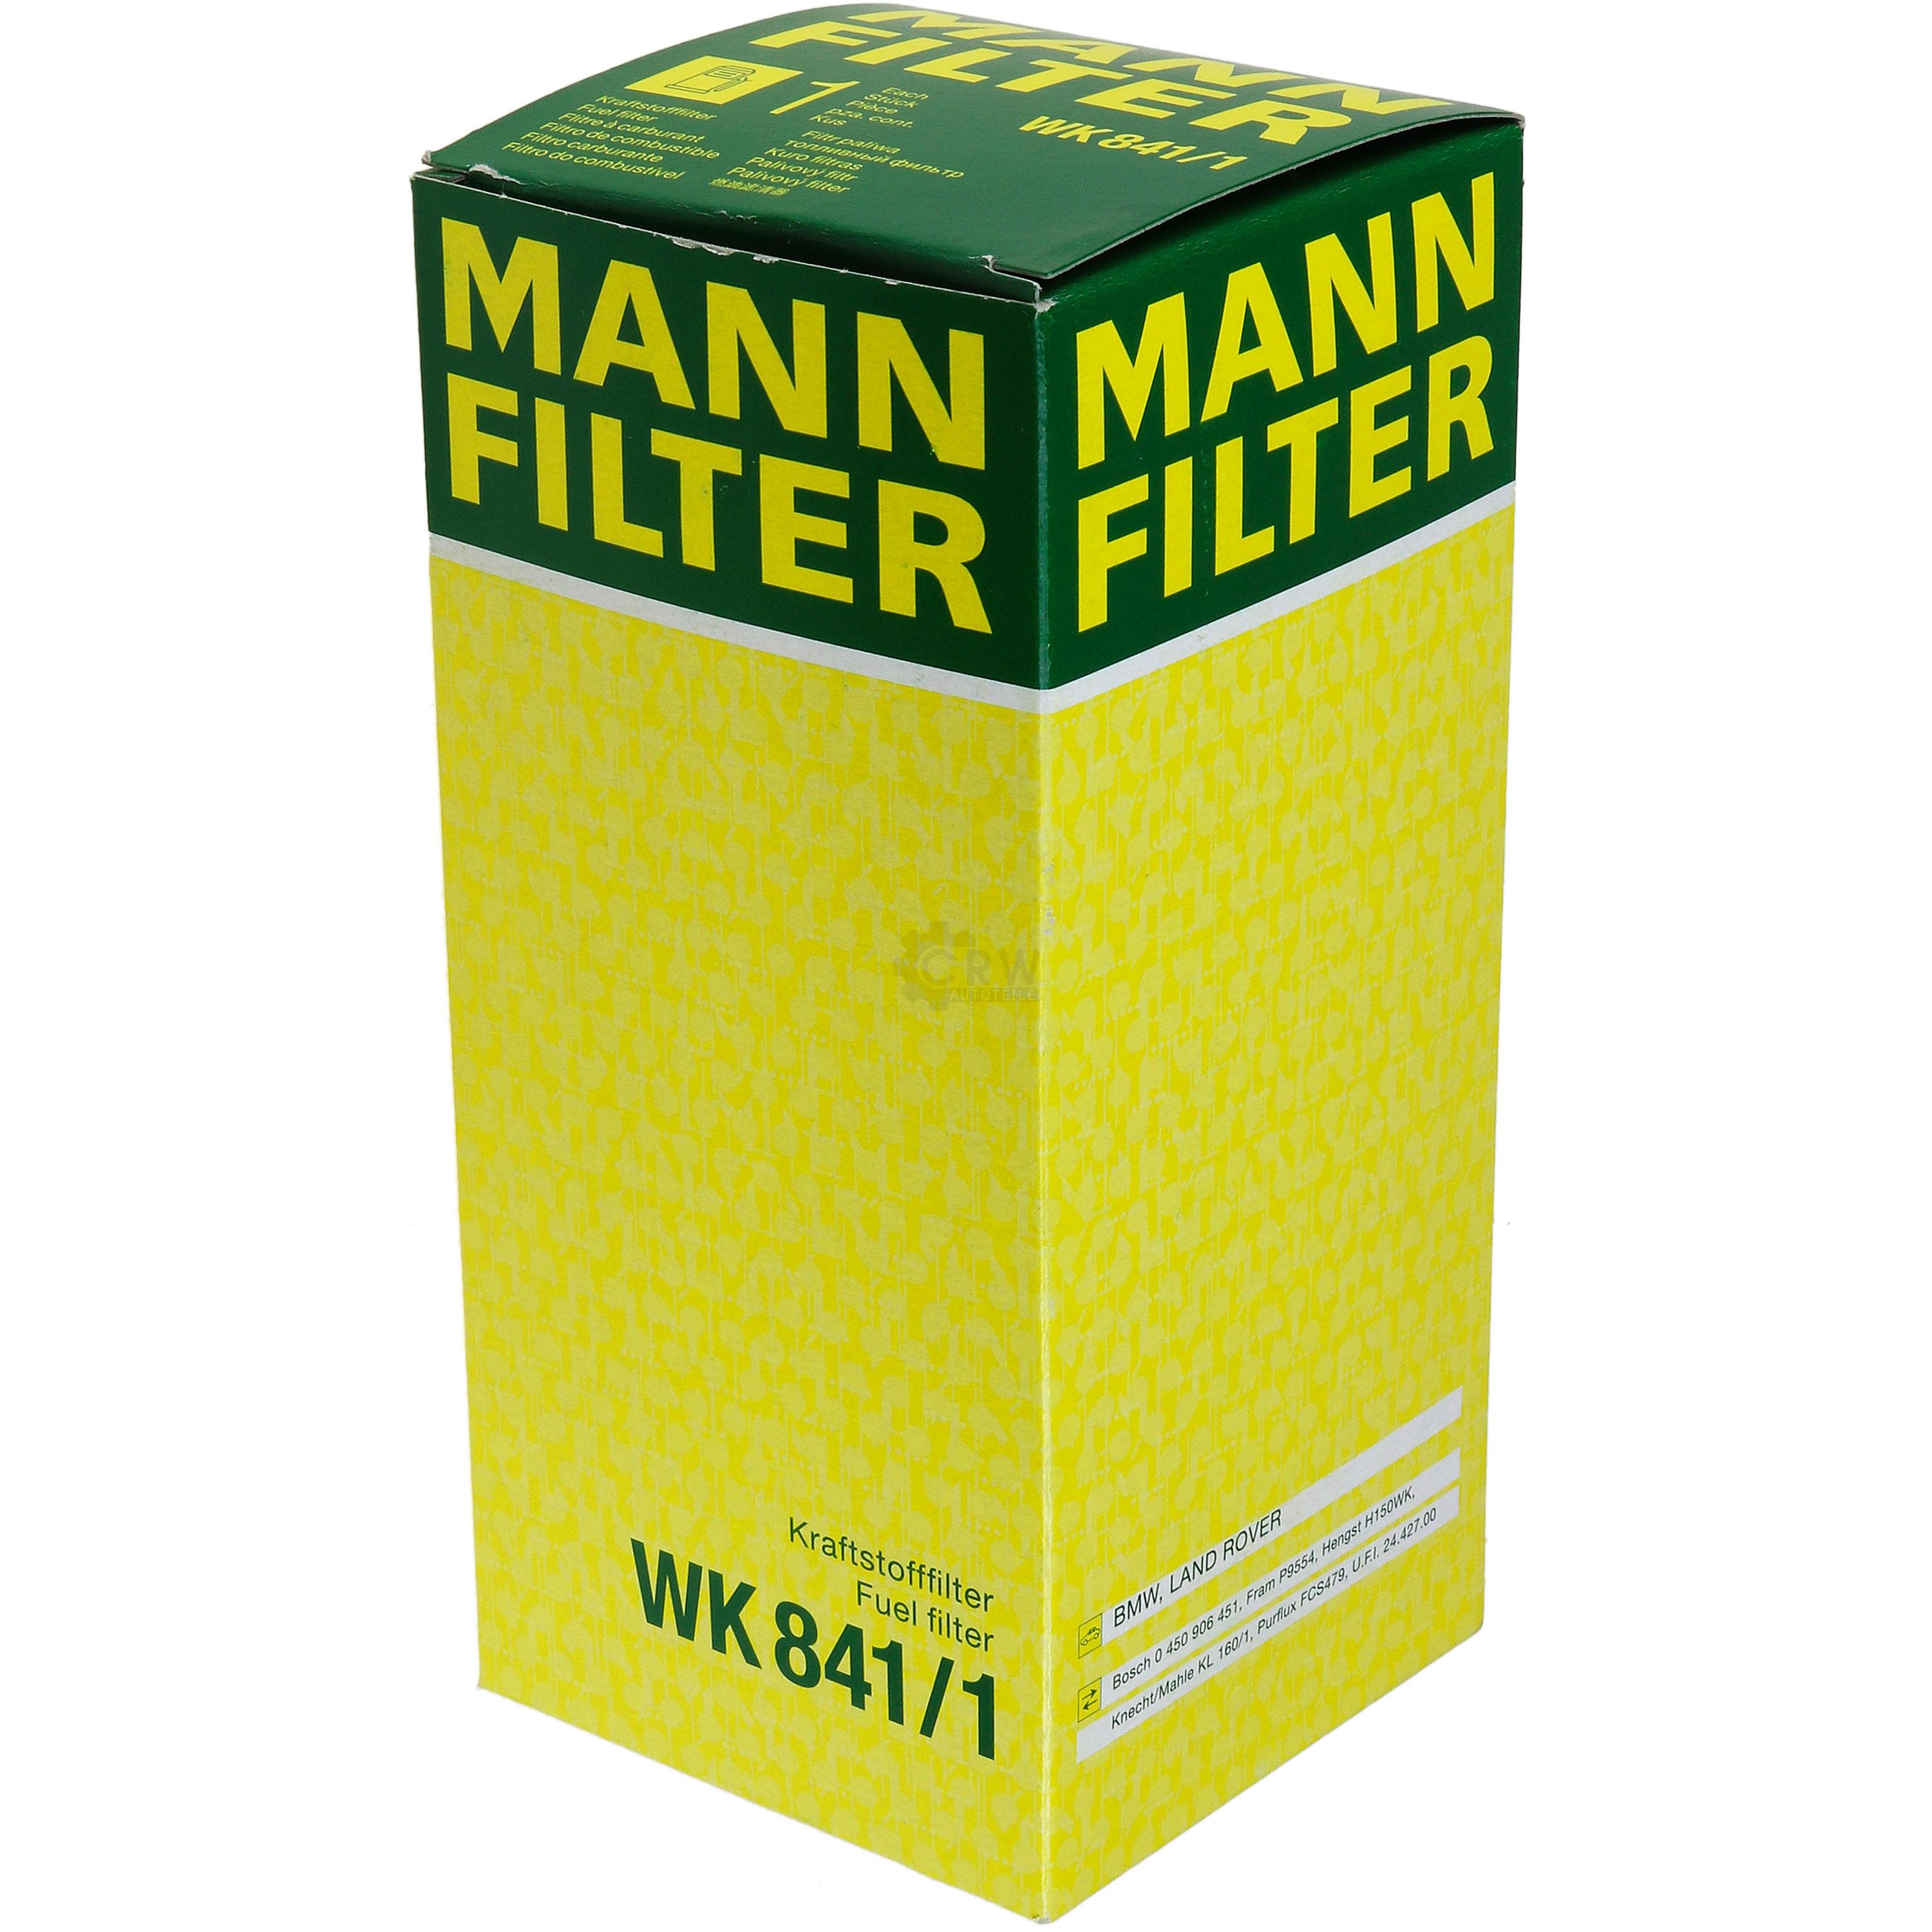 MANN-FILTER Kraftstofffilter WK 841/1 Fuel Filter